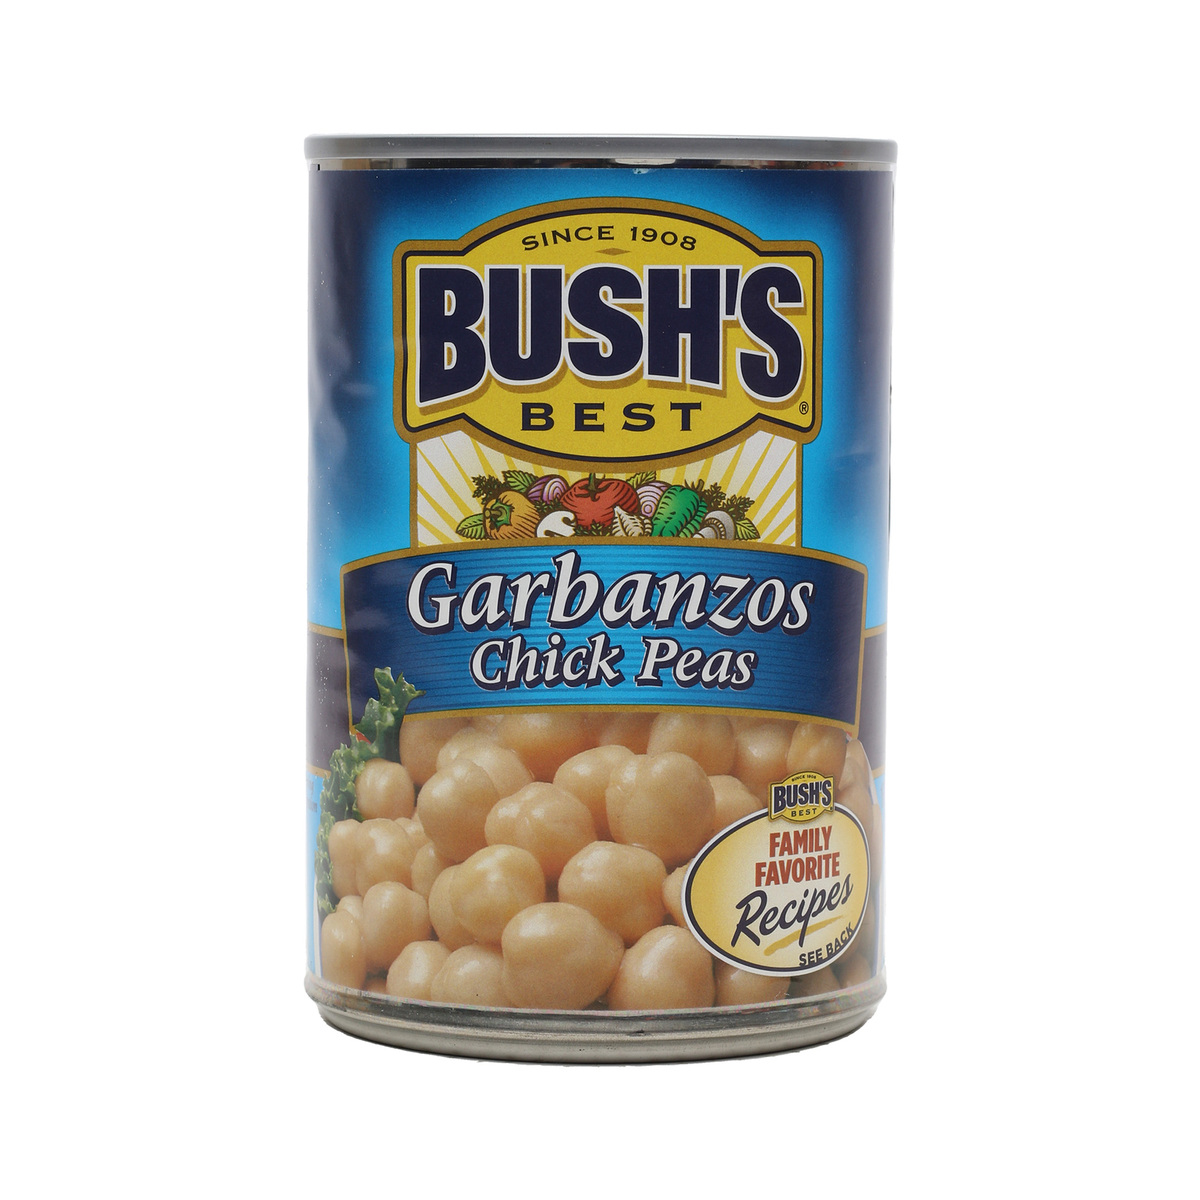 Bushs Bush's Garbanzos Chick Peas 454g